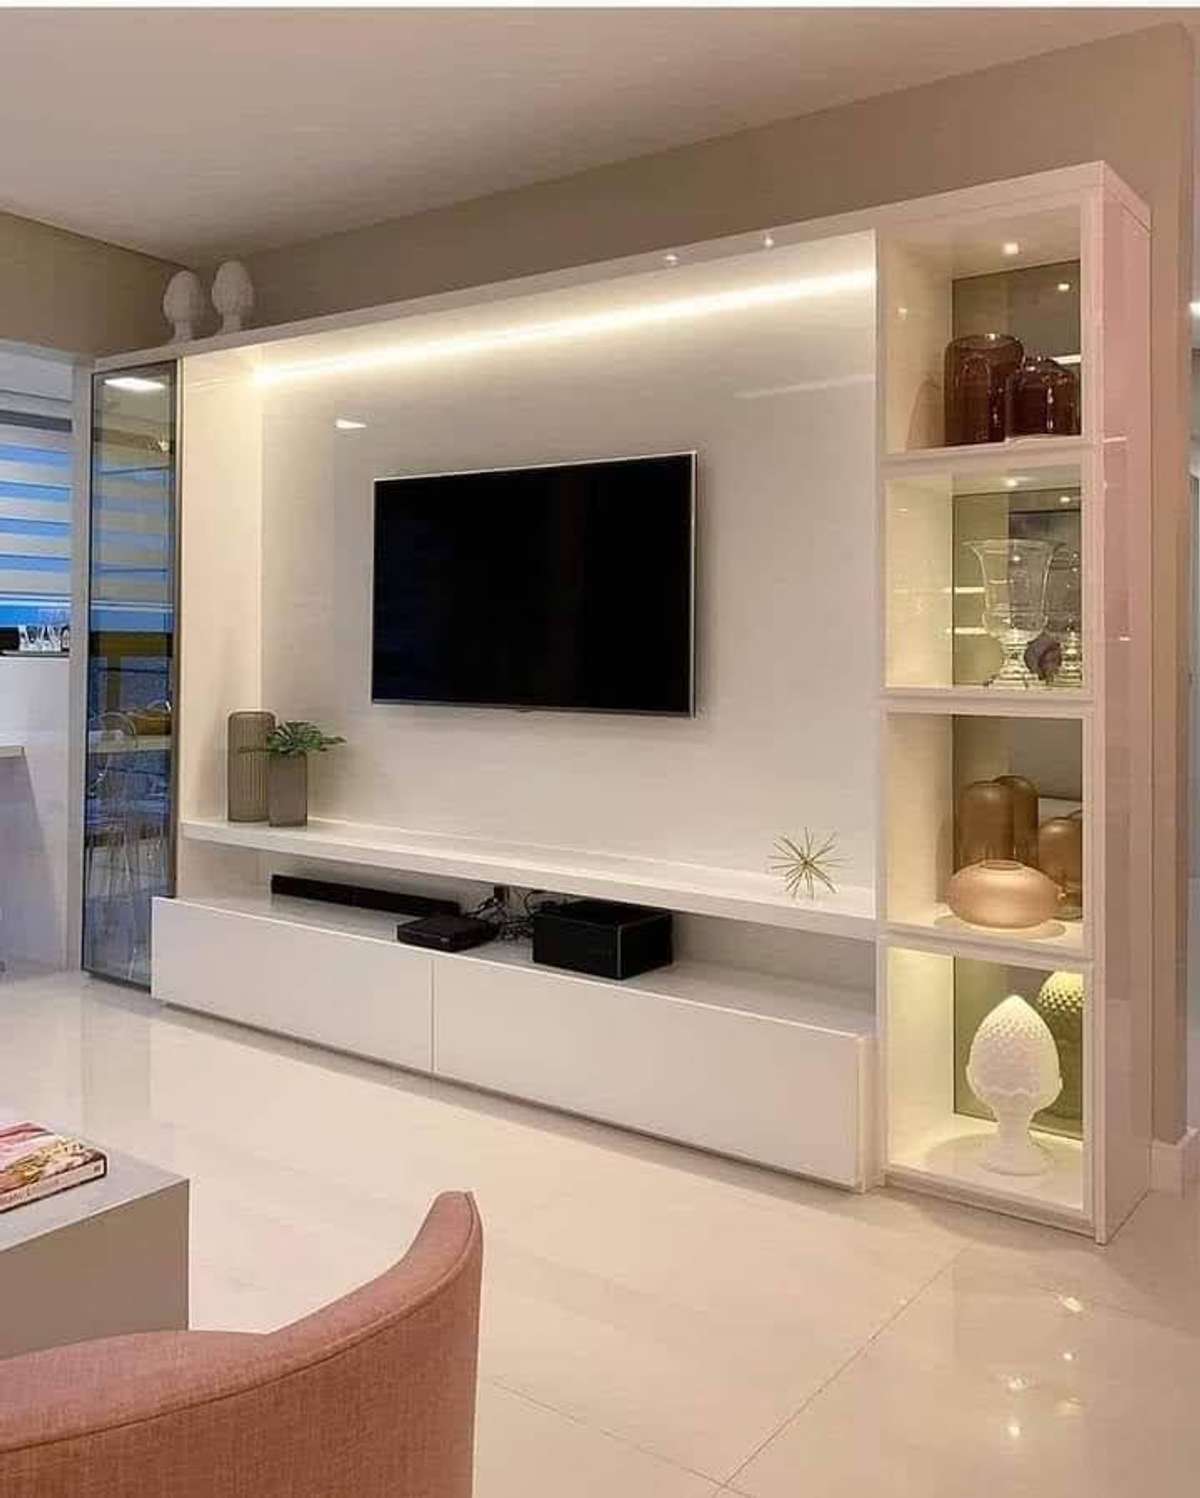 3d desgine .
.
.
.
 #InteriorDesigner #LivingroomDesigns #ElevationHome